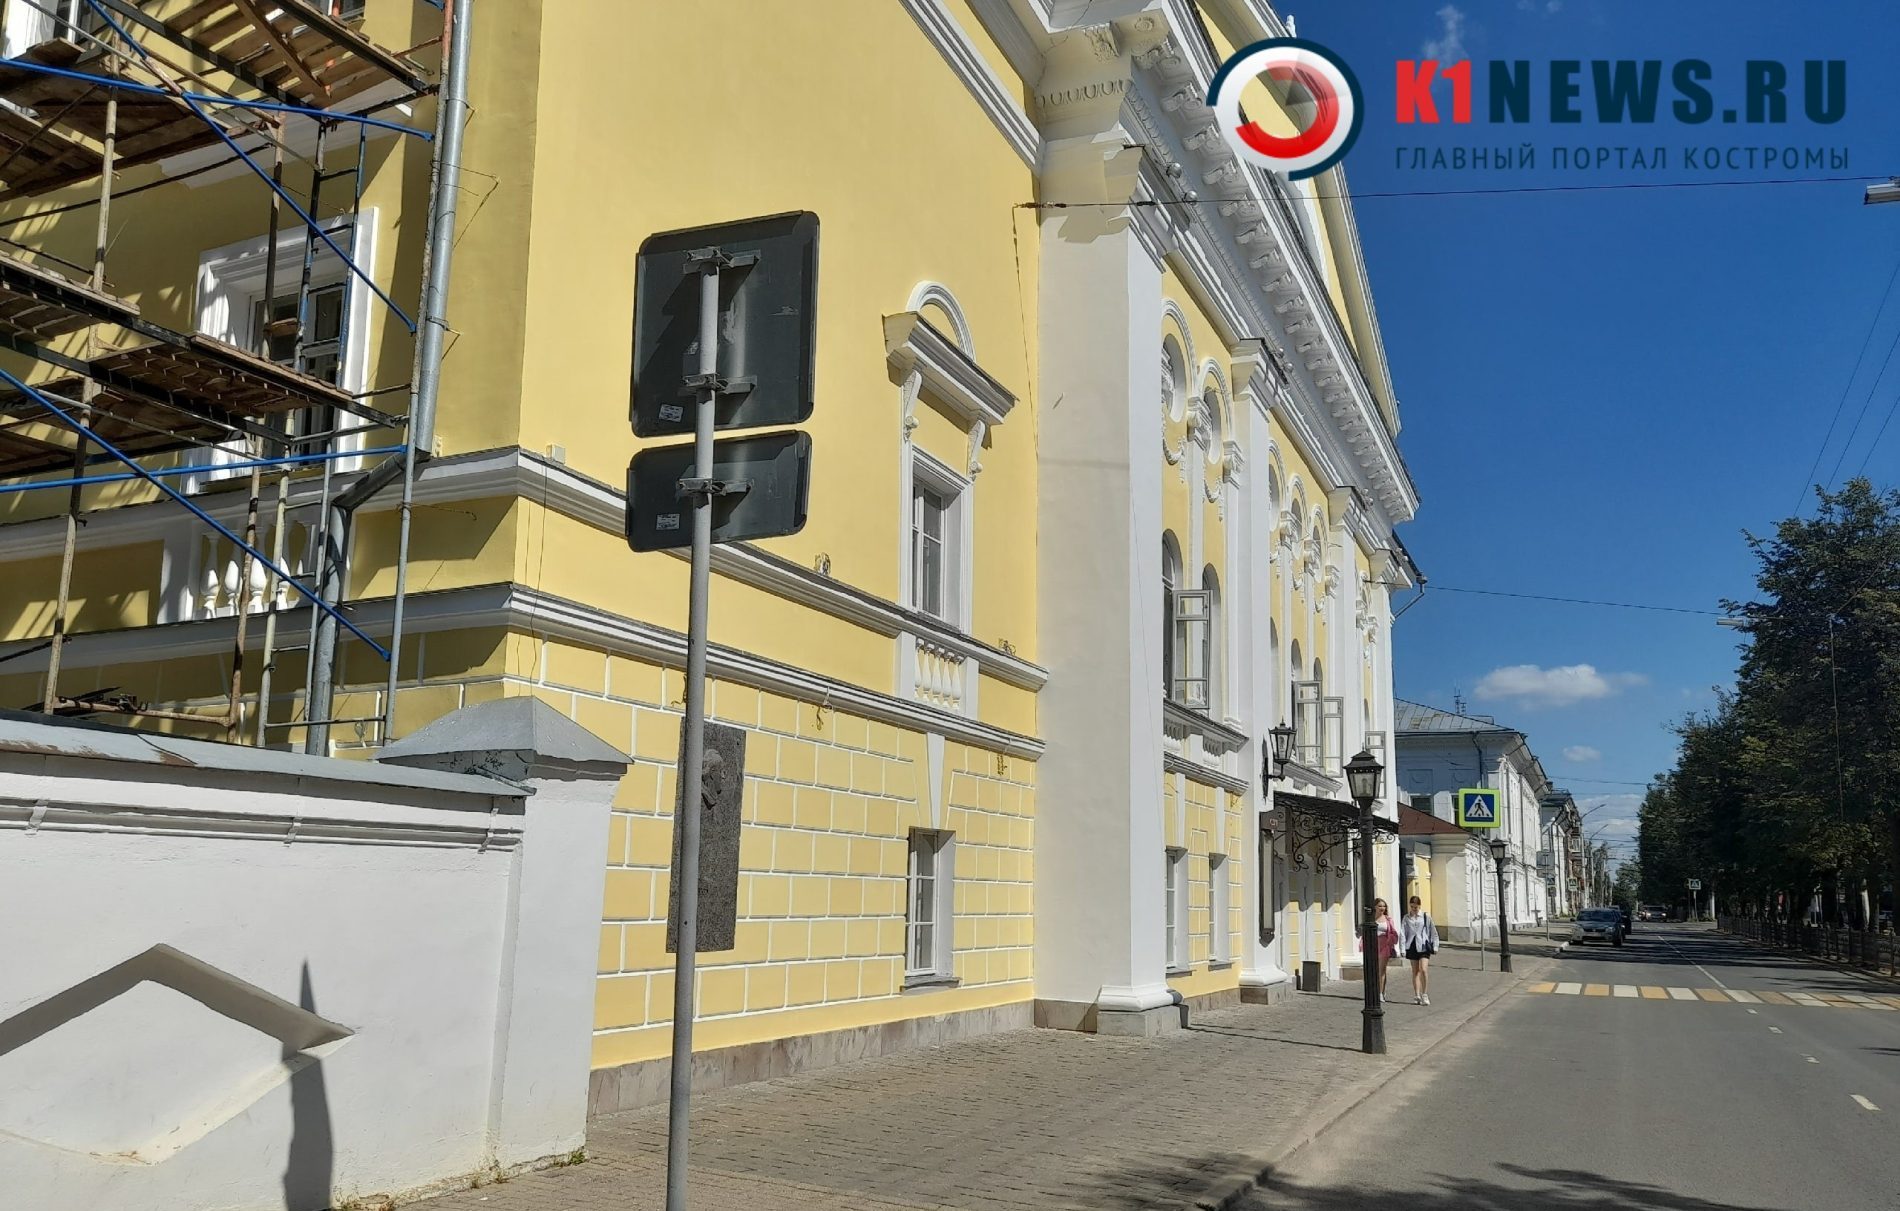 Фасад театра имени Островского в Костроме засиял благородным оттенком золота